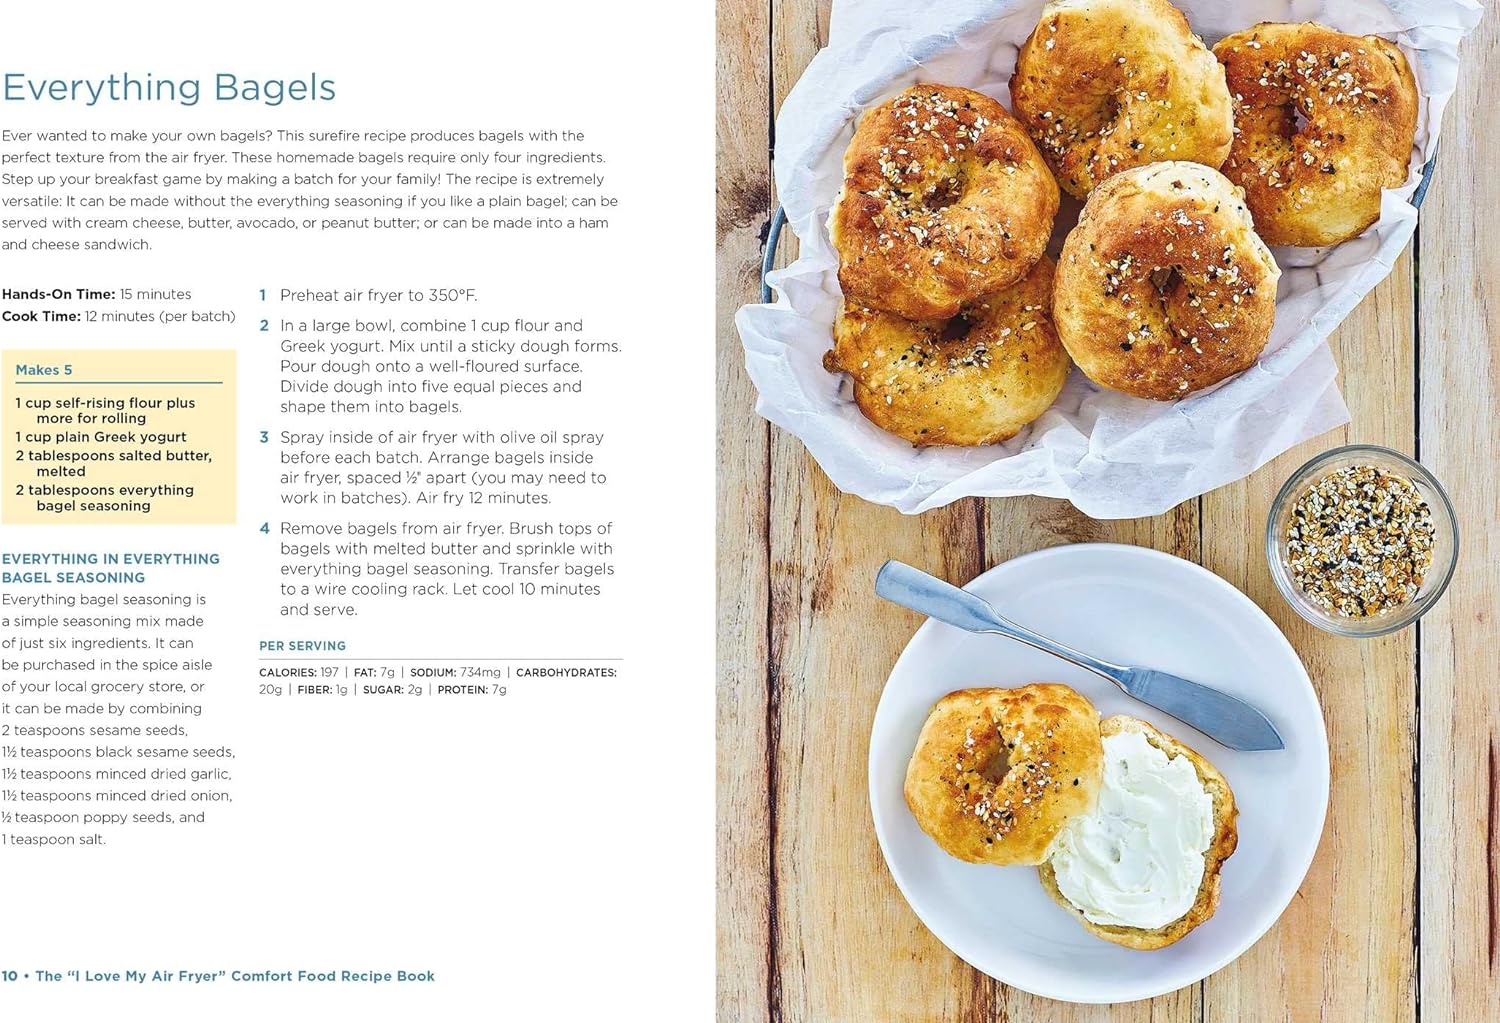 air fryer comfort food recipe book review